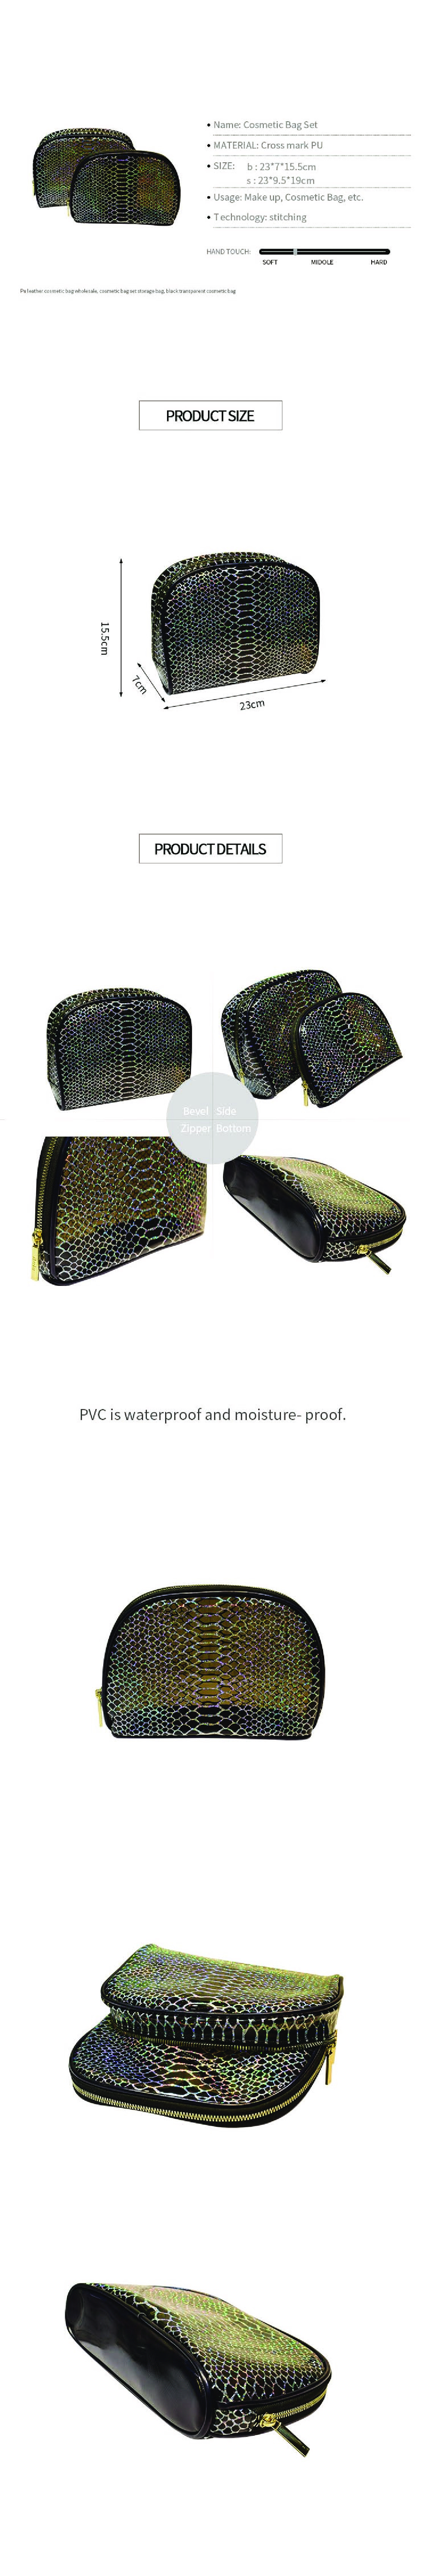 厂家直销时尚网状图案透明pvc旅行洗漱防水女士女士化妆品袋详情图2